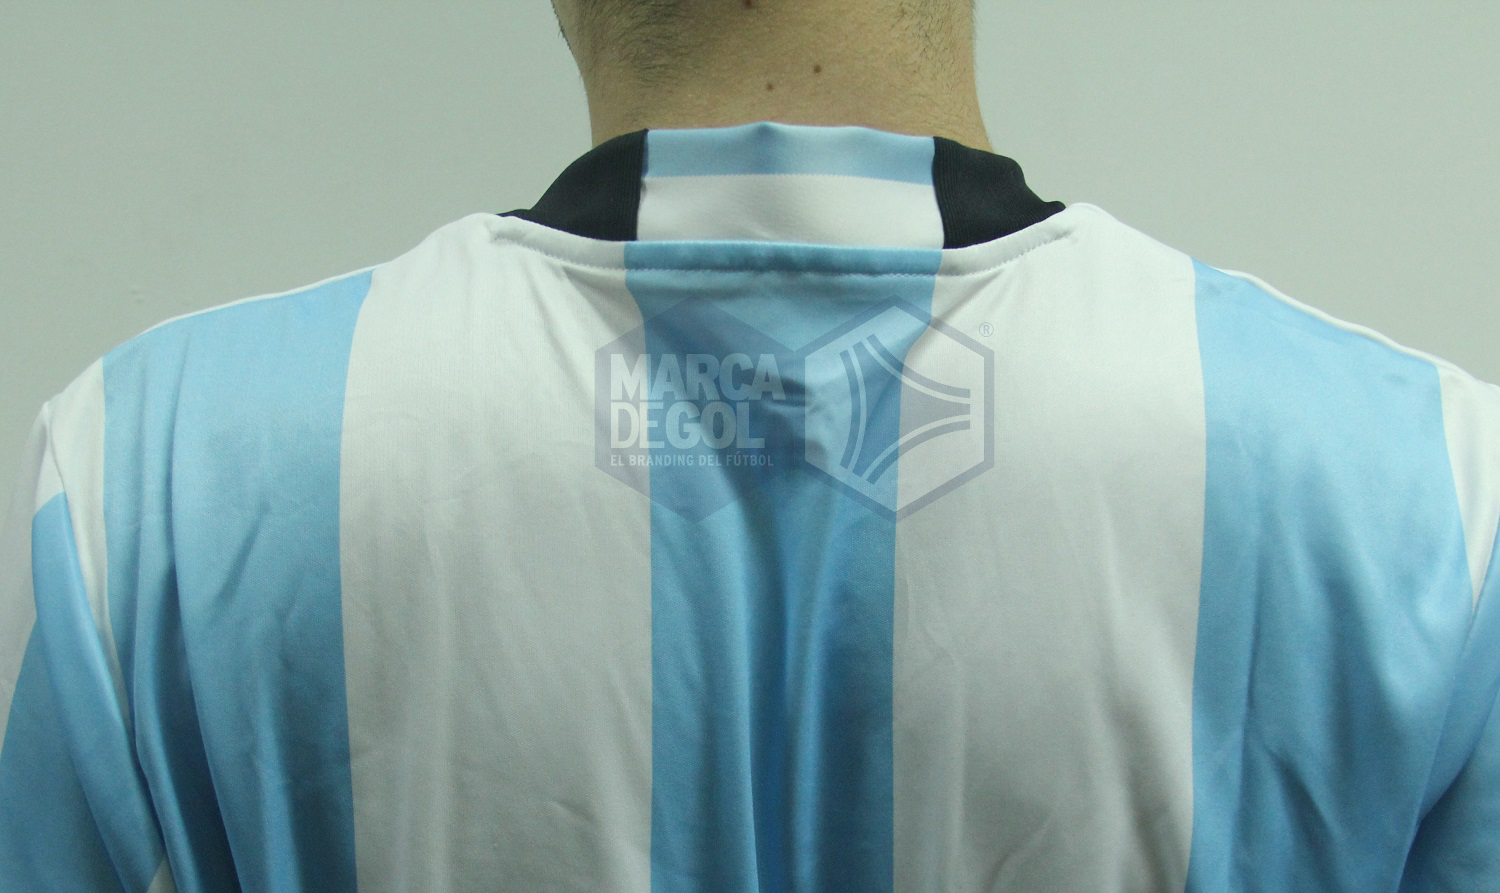 Camiseta Argentina adidas 2016 review 03